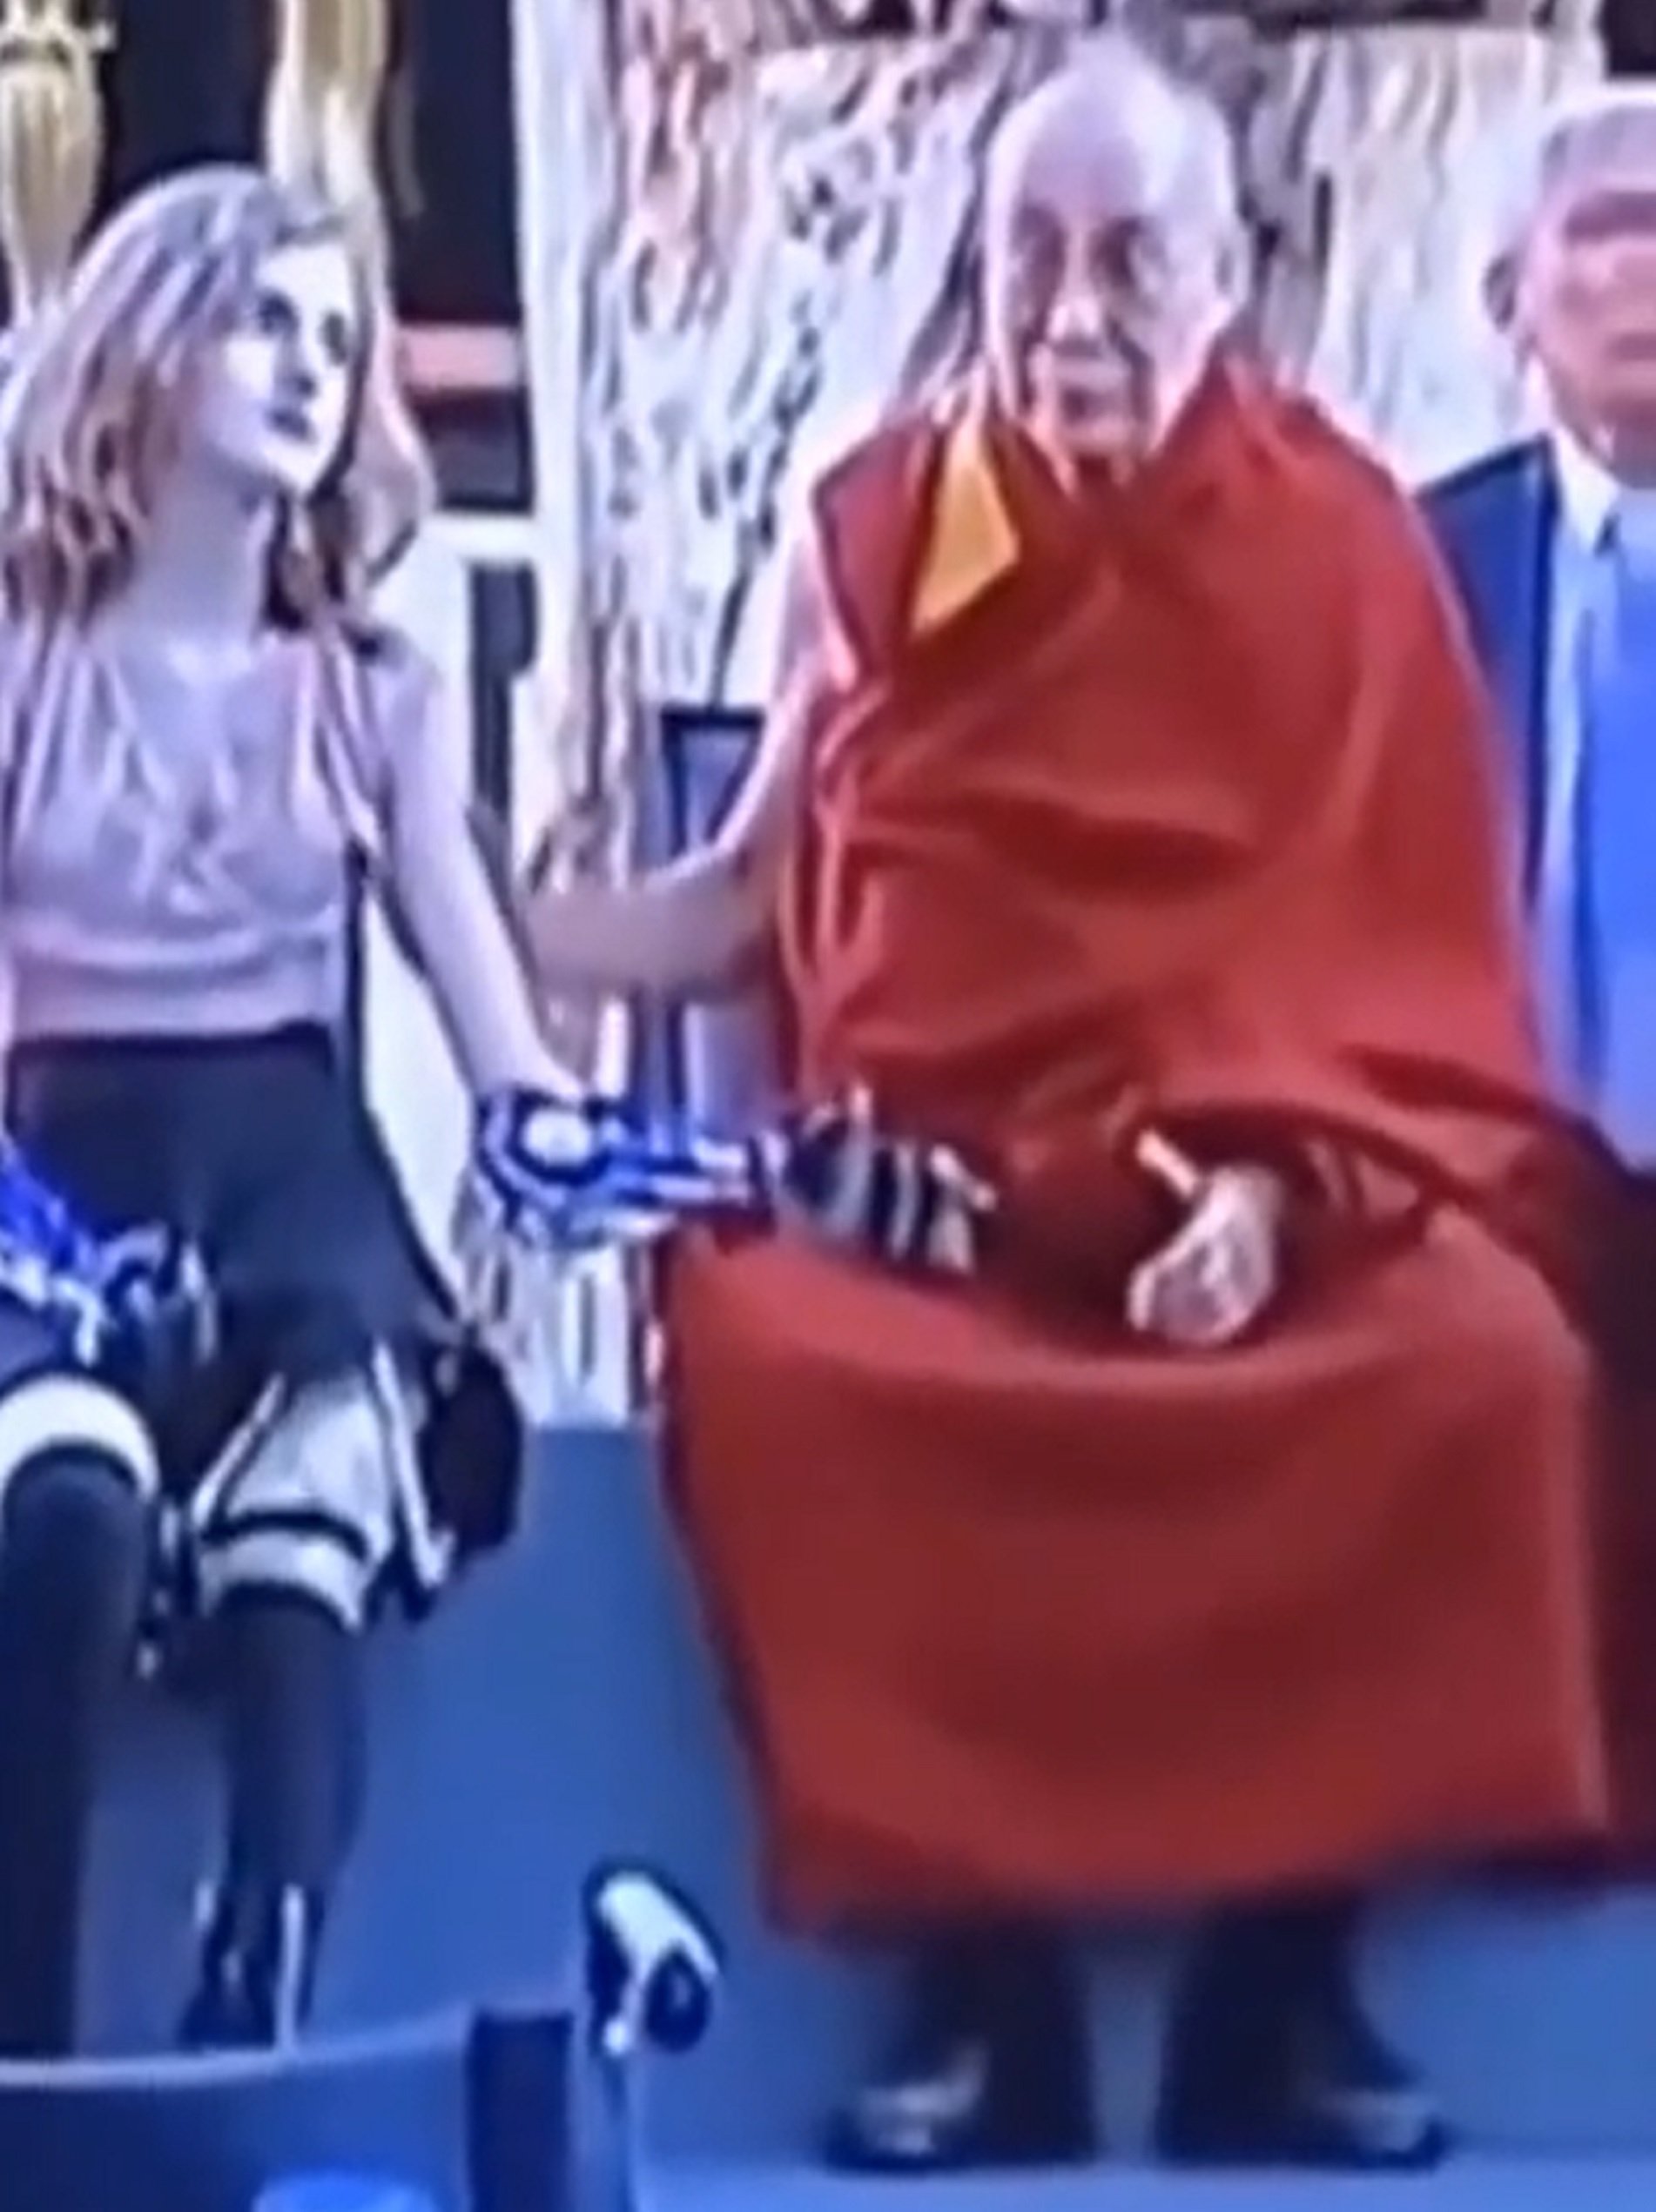 Sale a la luz un segundo vídeo polémico del Dalai Lama toqueteando a una niña de manera inapropiada